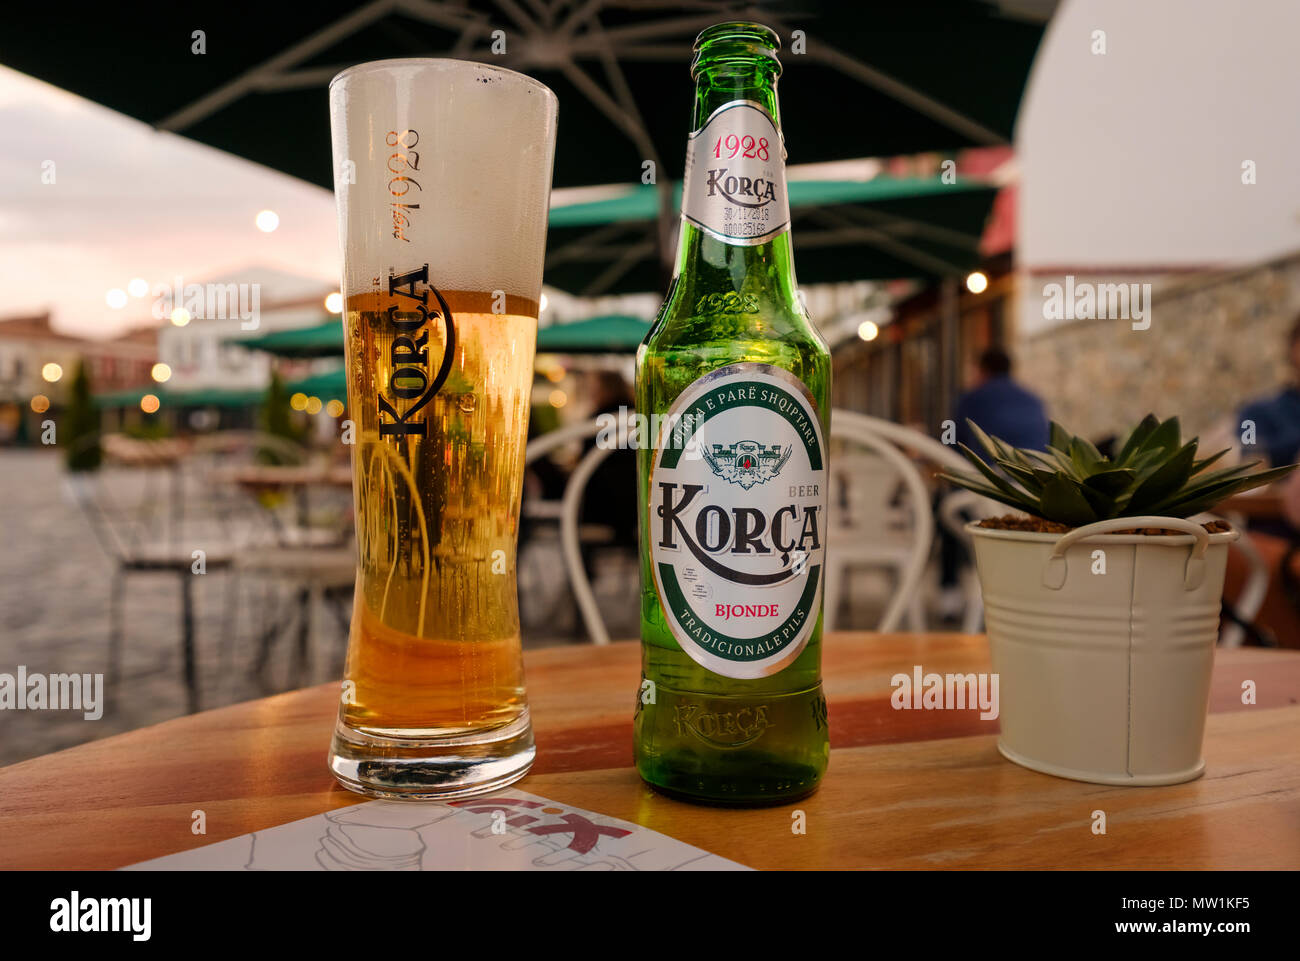 Verre de bière et une bouteille de bière sur la table, Korca bière, Korca, Korça, Albanie Banque D'Images